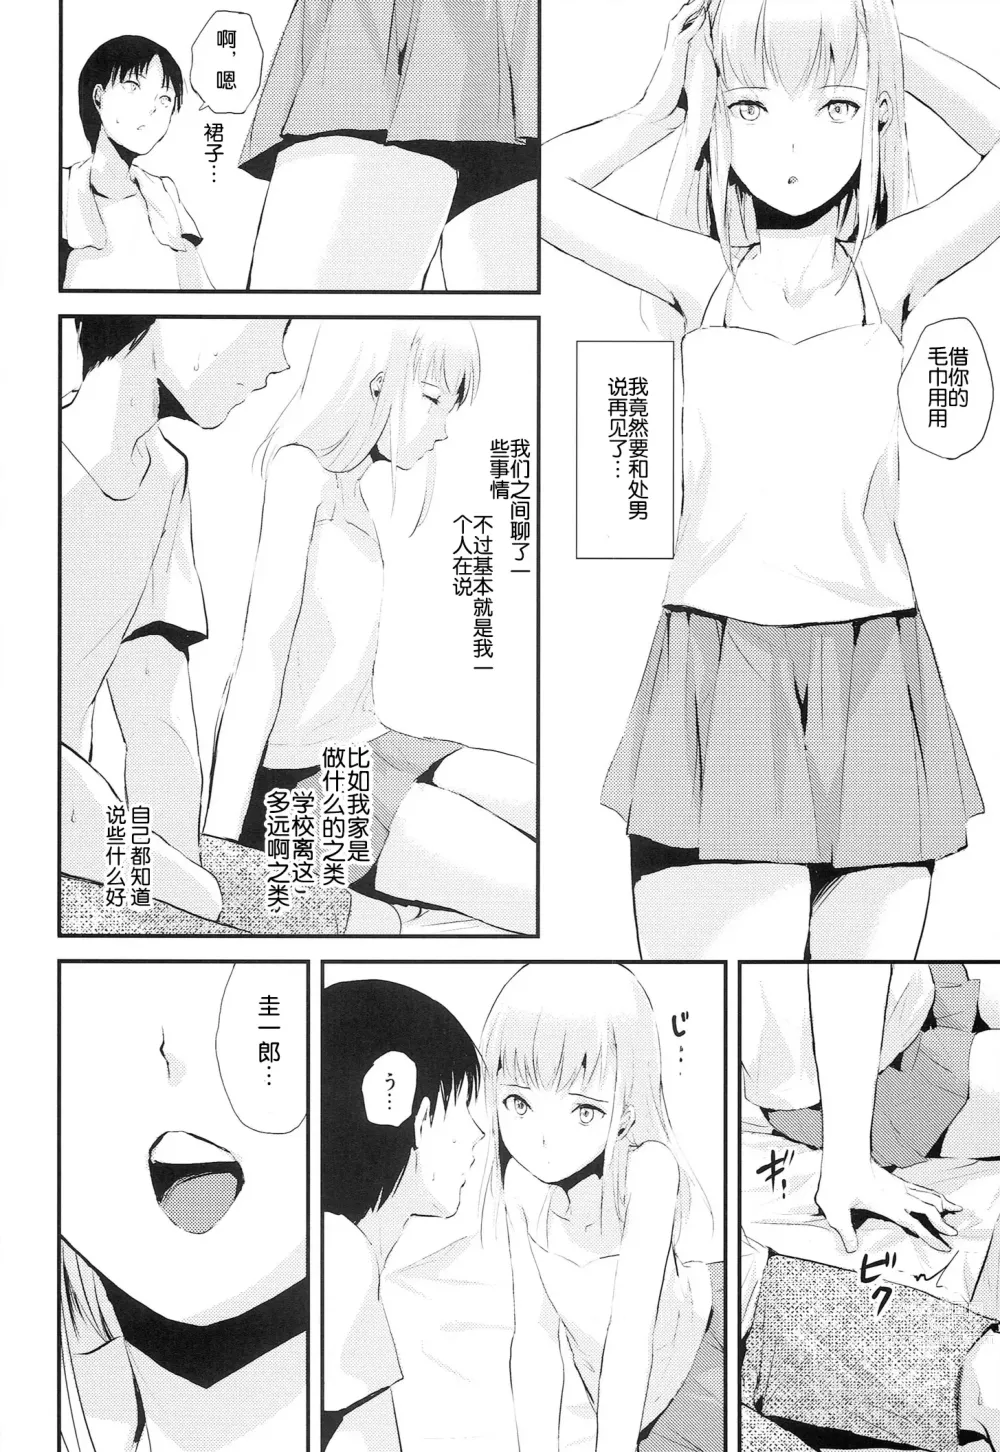 Page 8 of manga Natsu no Takenawa